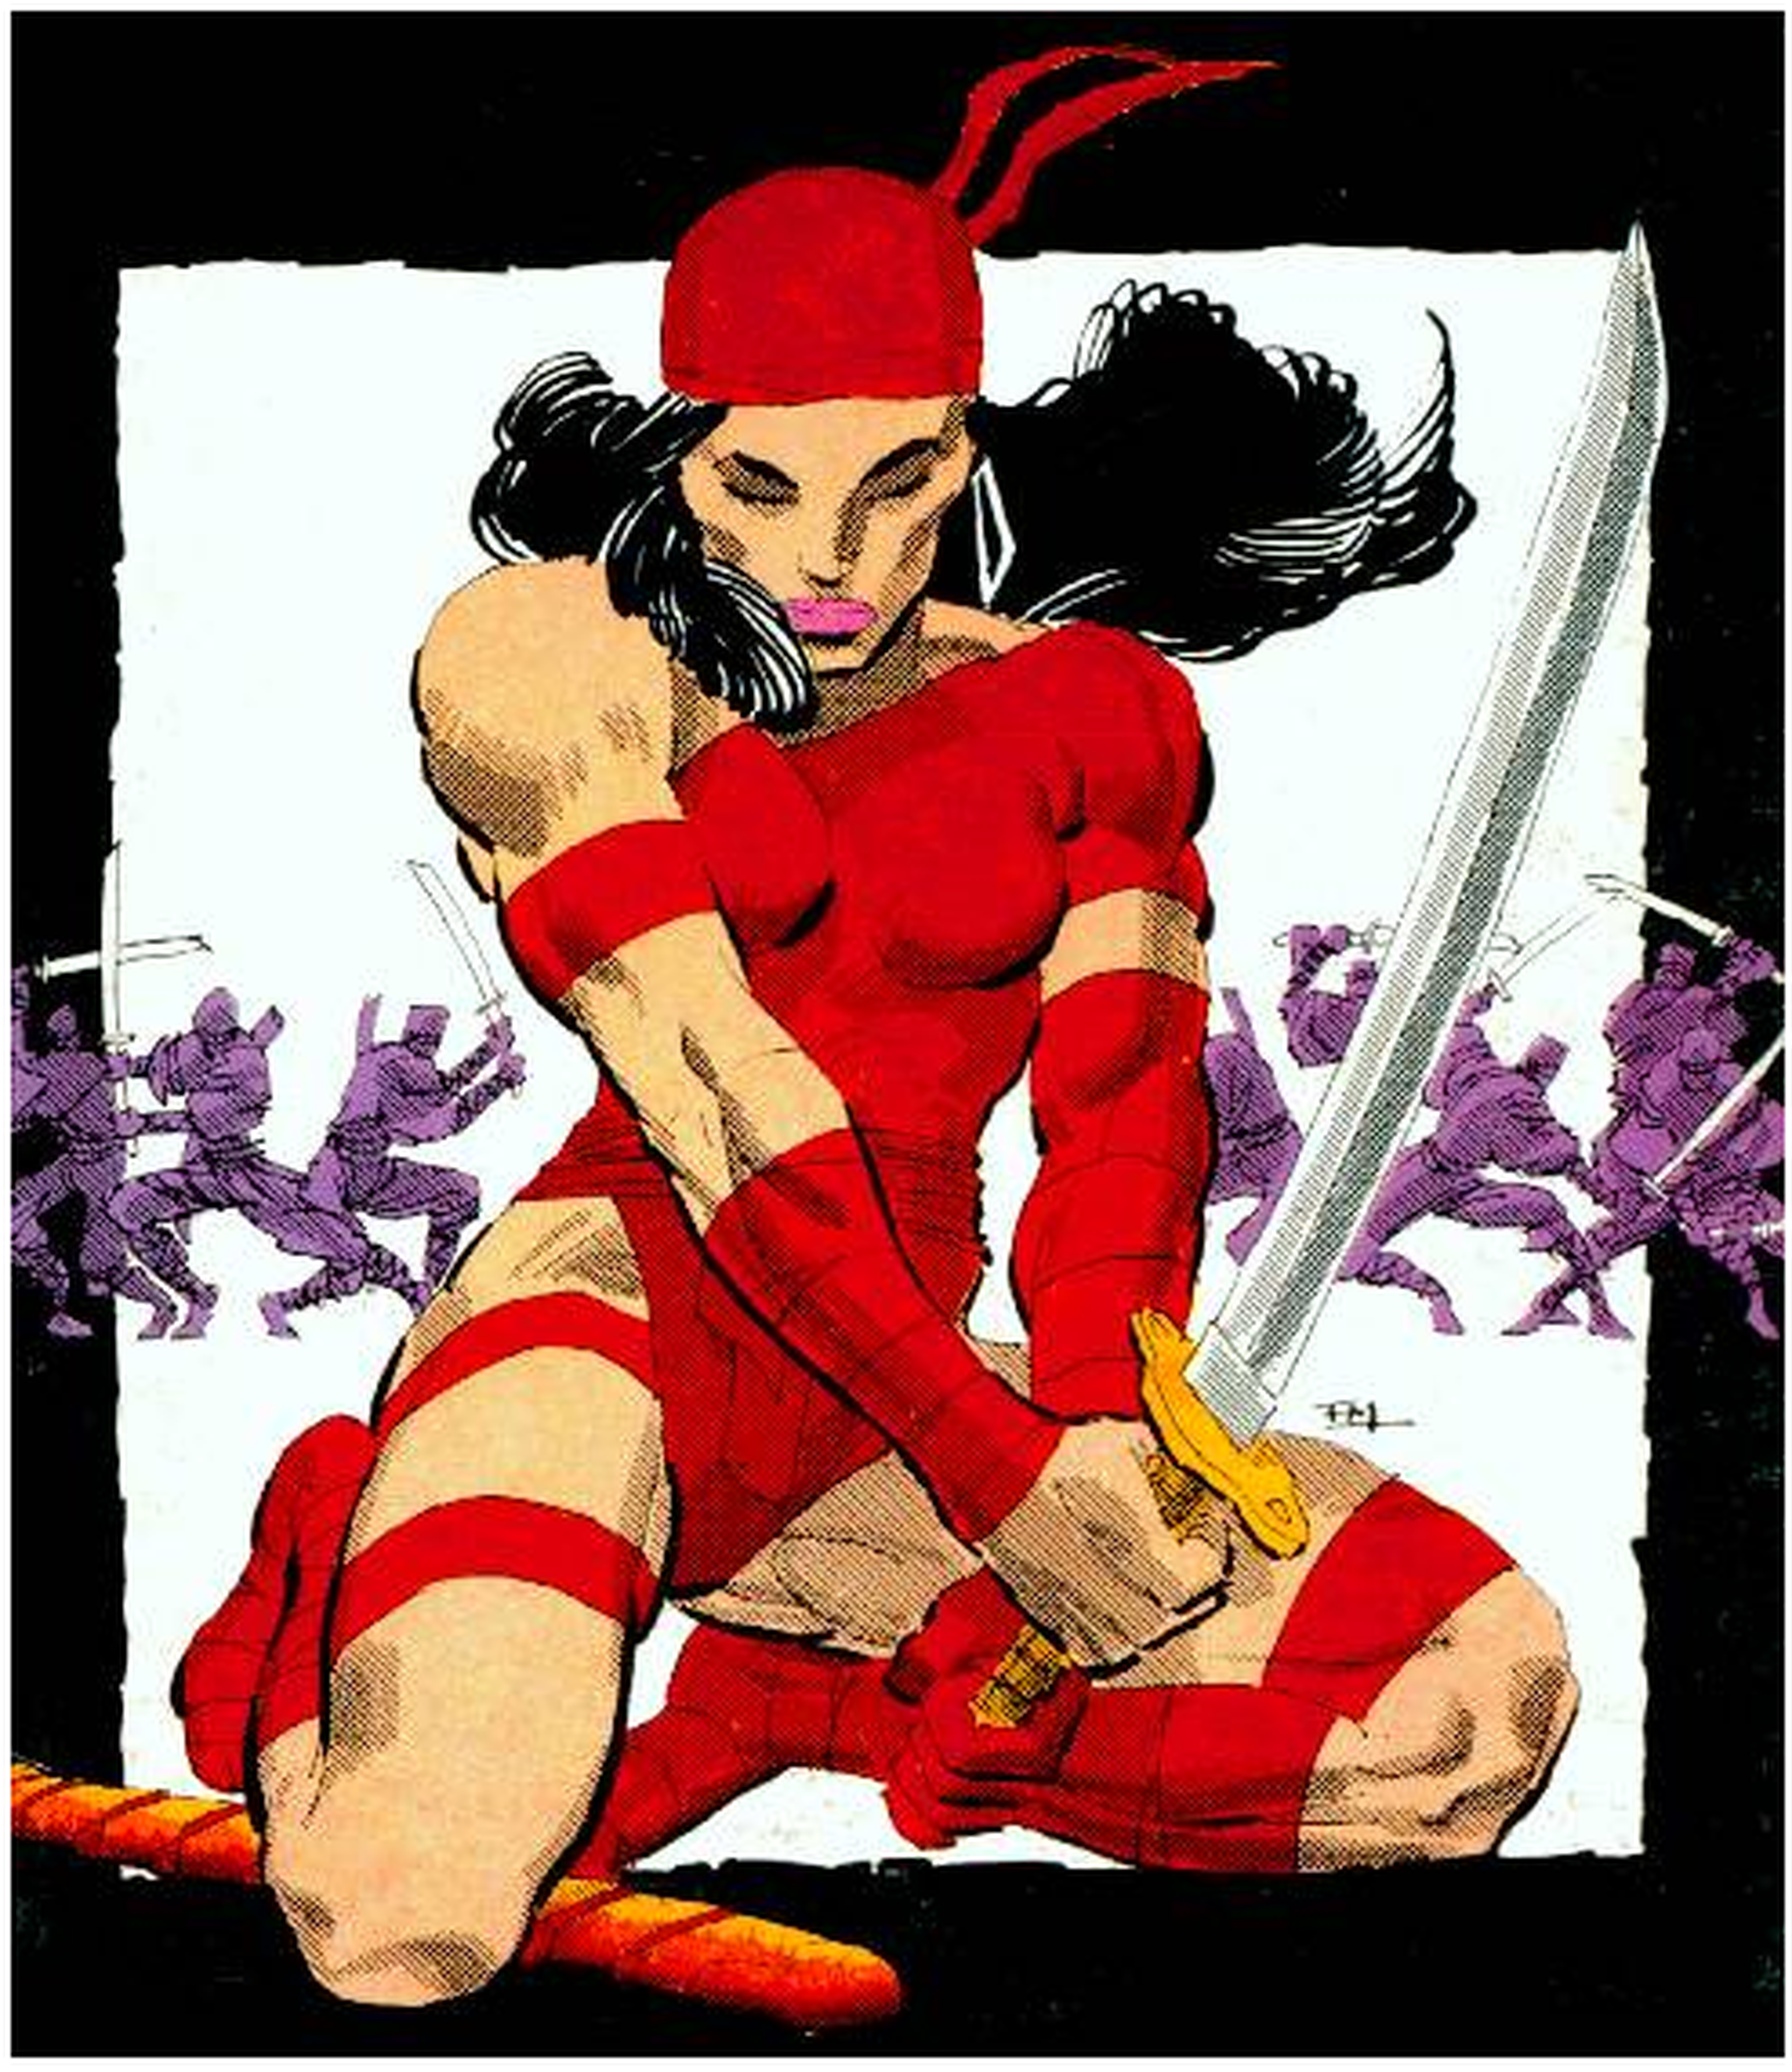 Cine de superhéroes: Crítica de Elektra